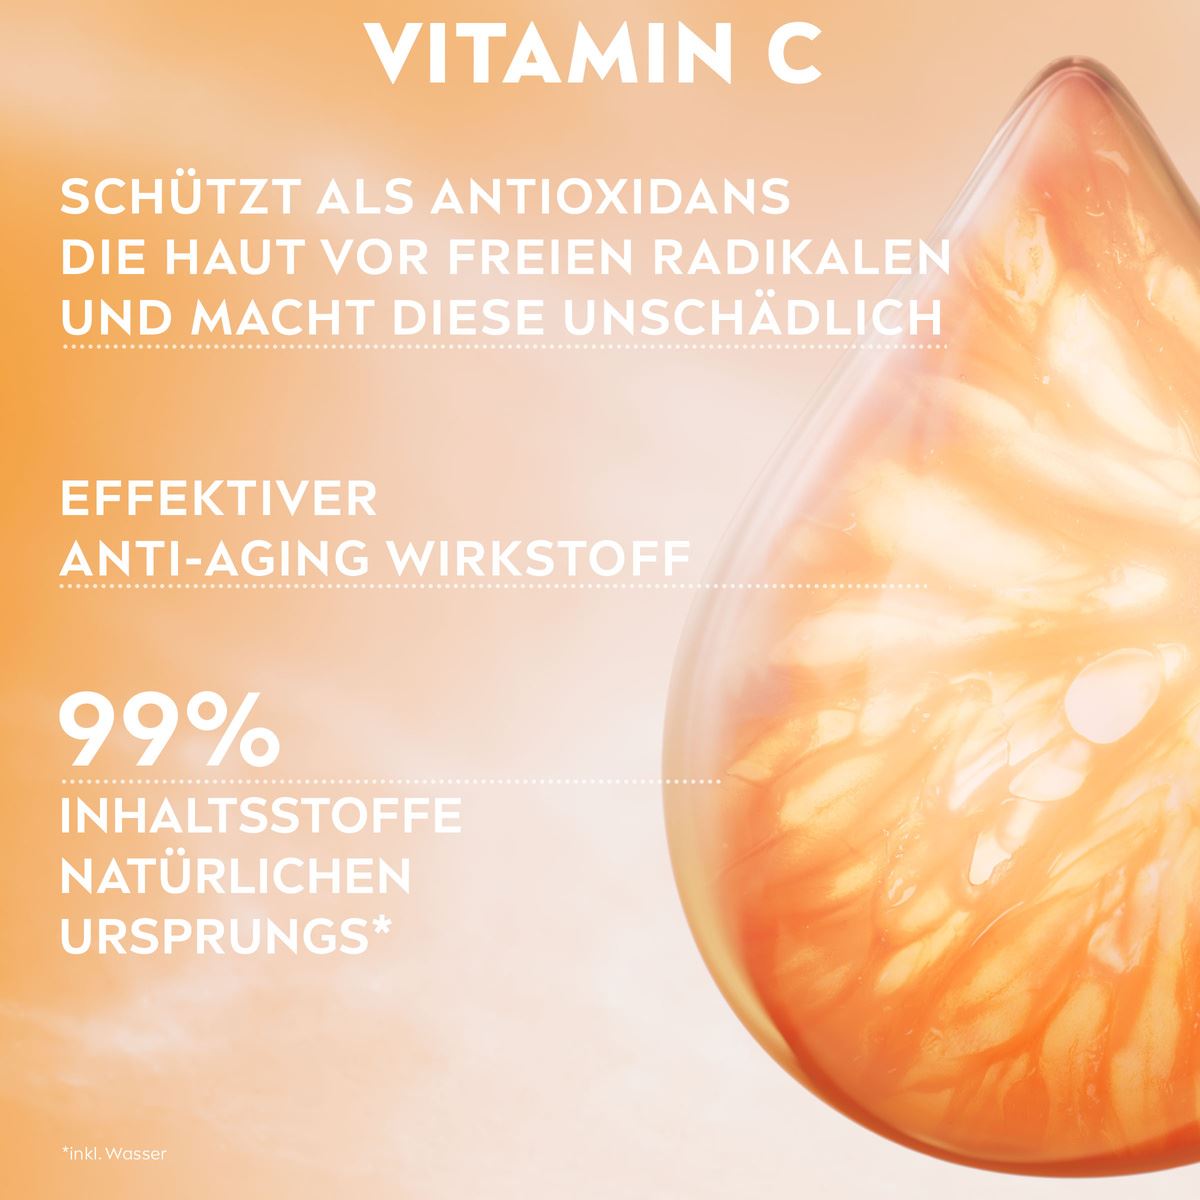 NIVEA Cellular Professional Serum Vitamin C